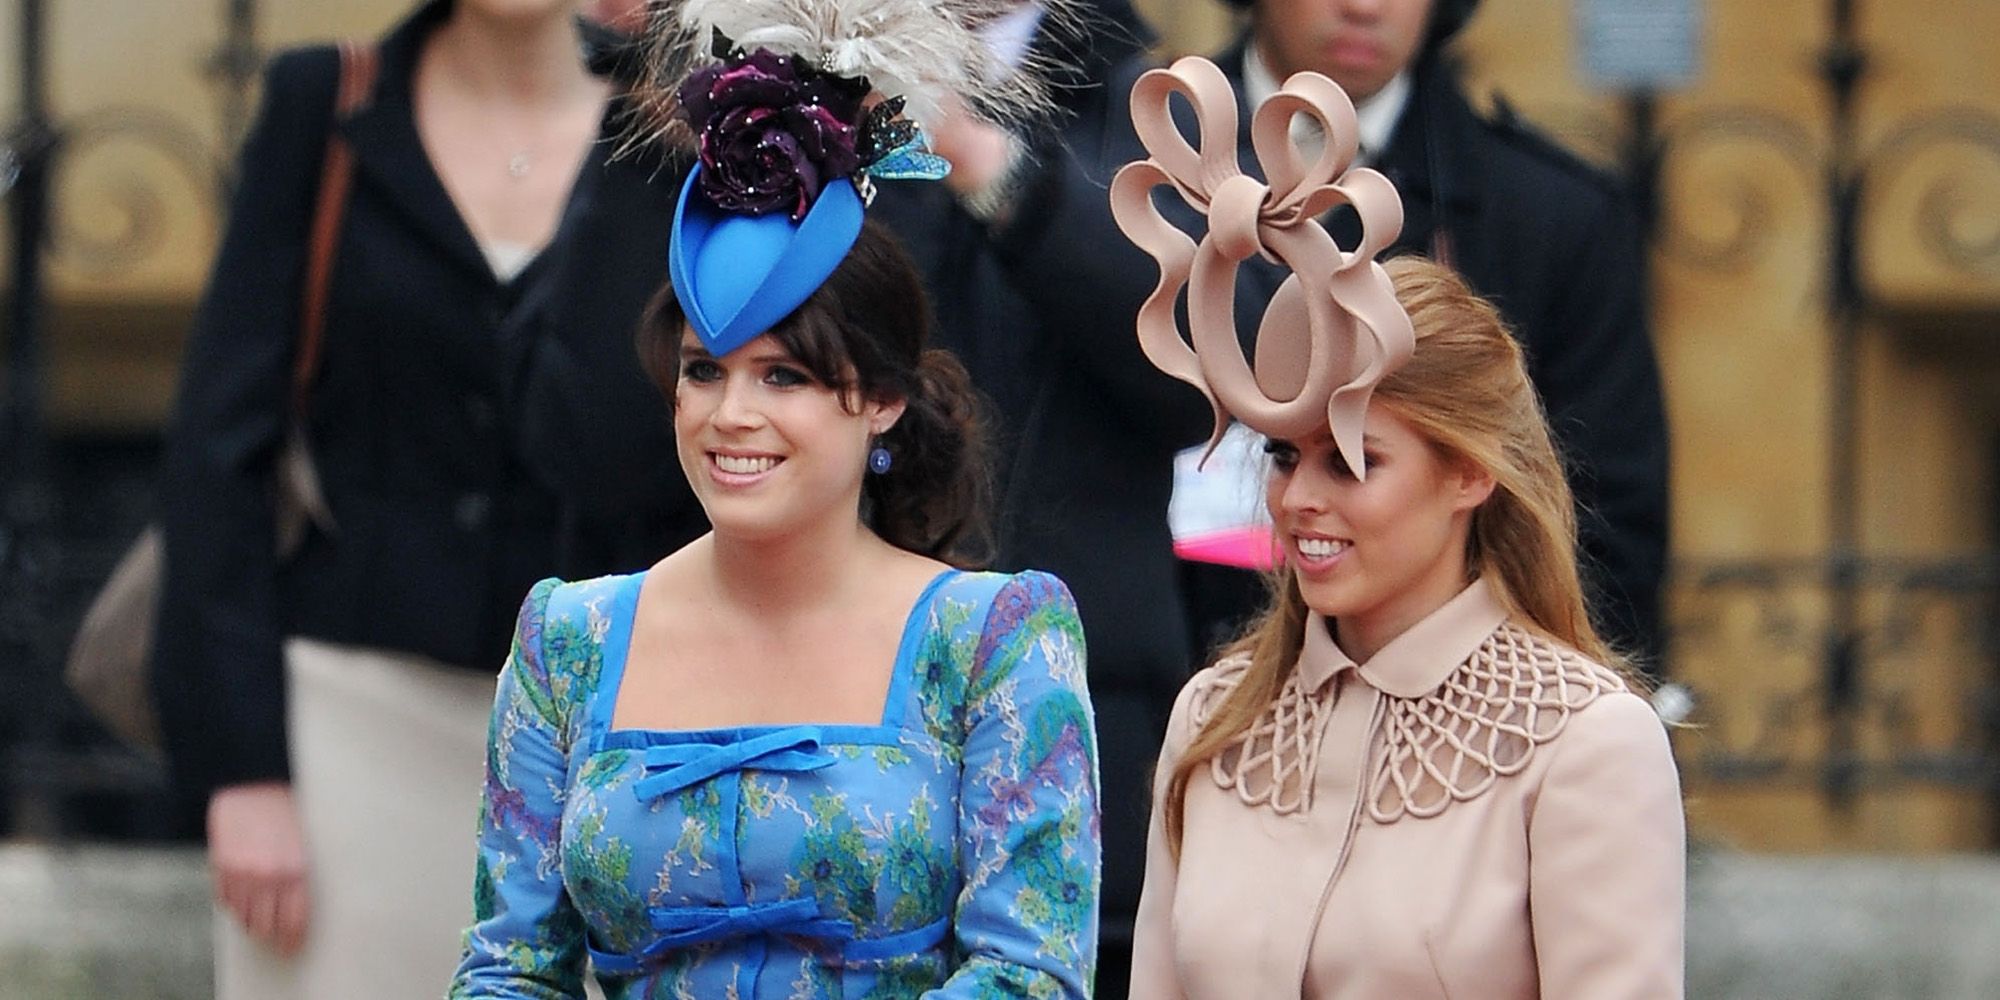 fascinator hat royal wedding